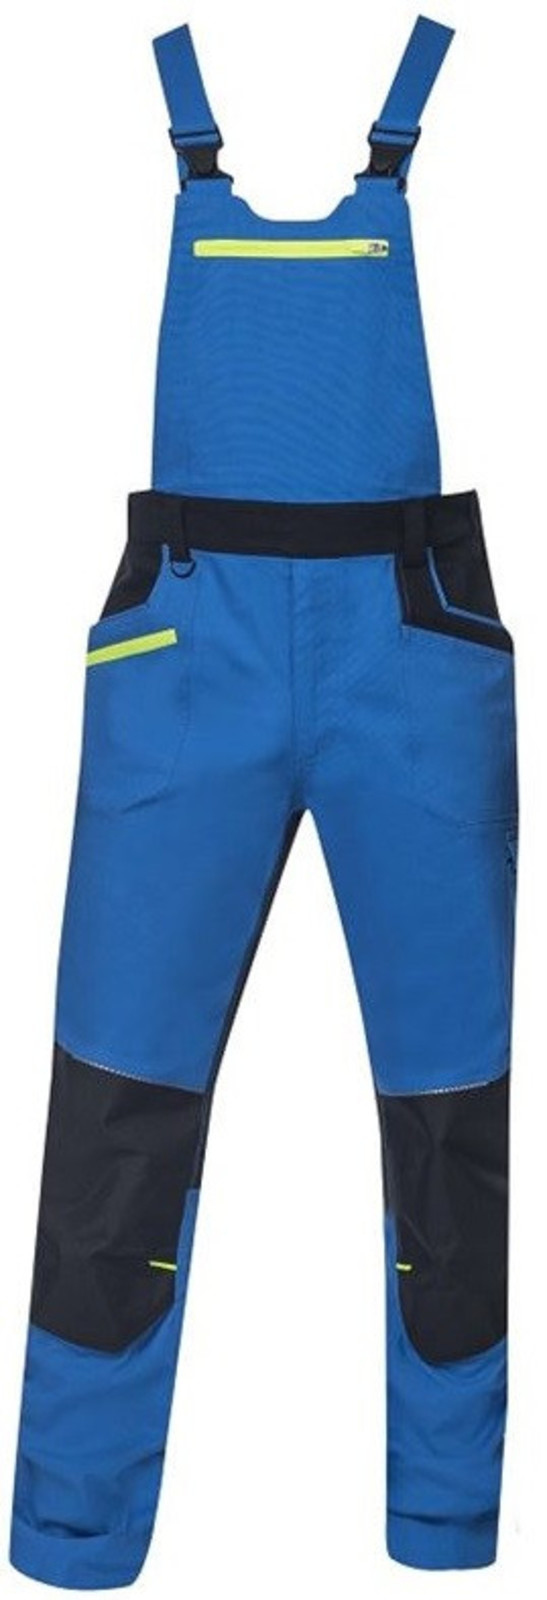 Pánske strečové montérkové nohavice na traky Ardon 4Xstretch - veľkosť: 46, farba: tmavo modrá